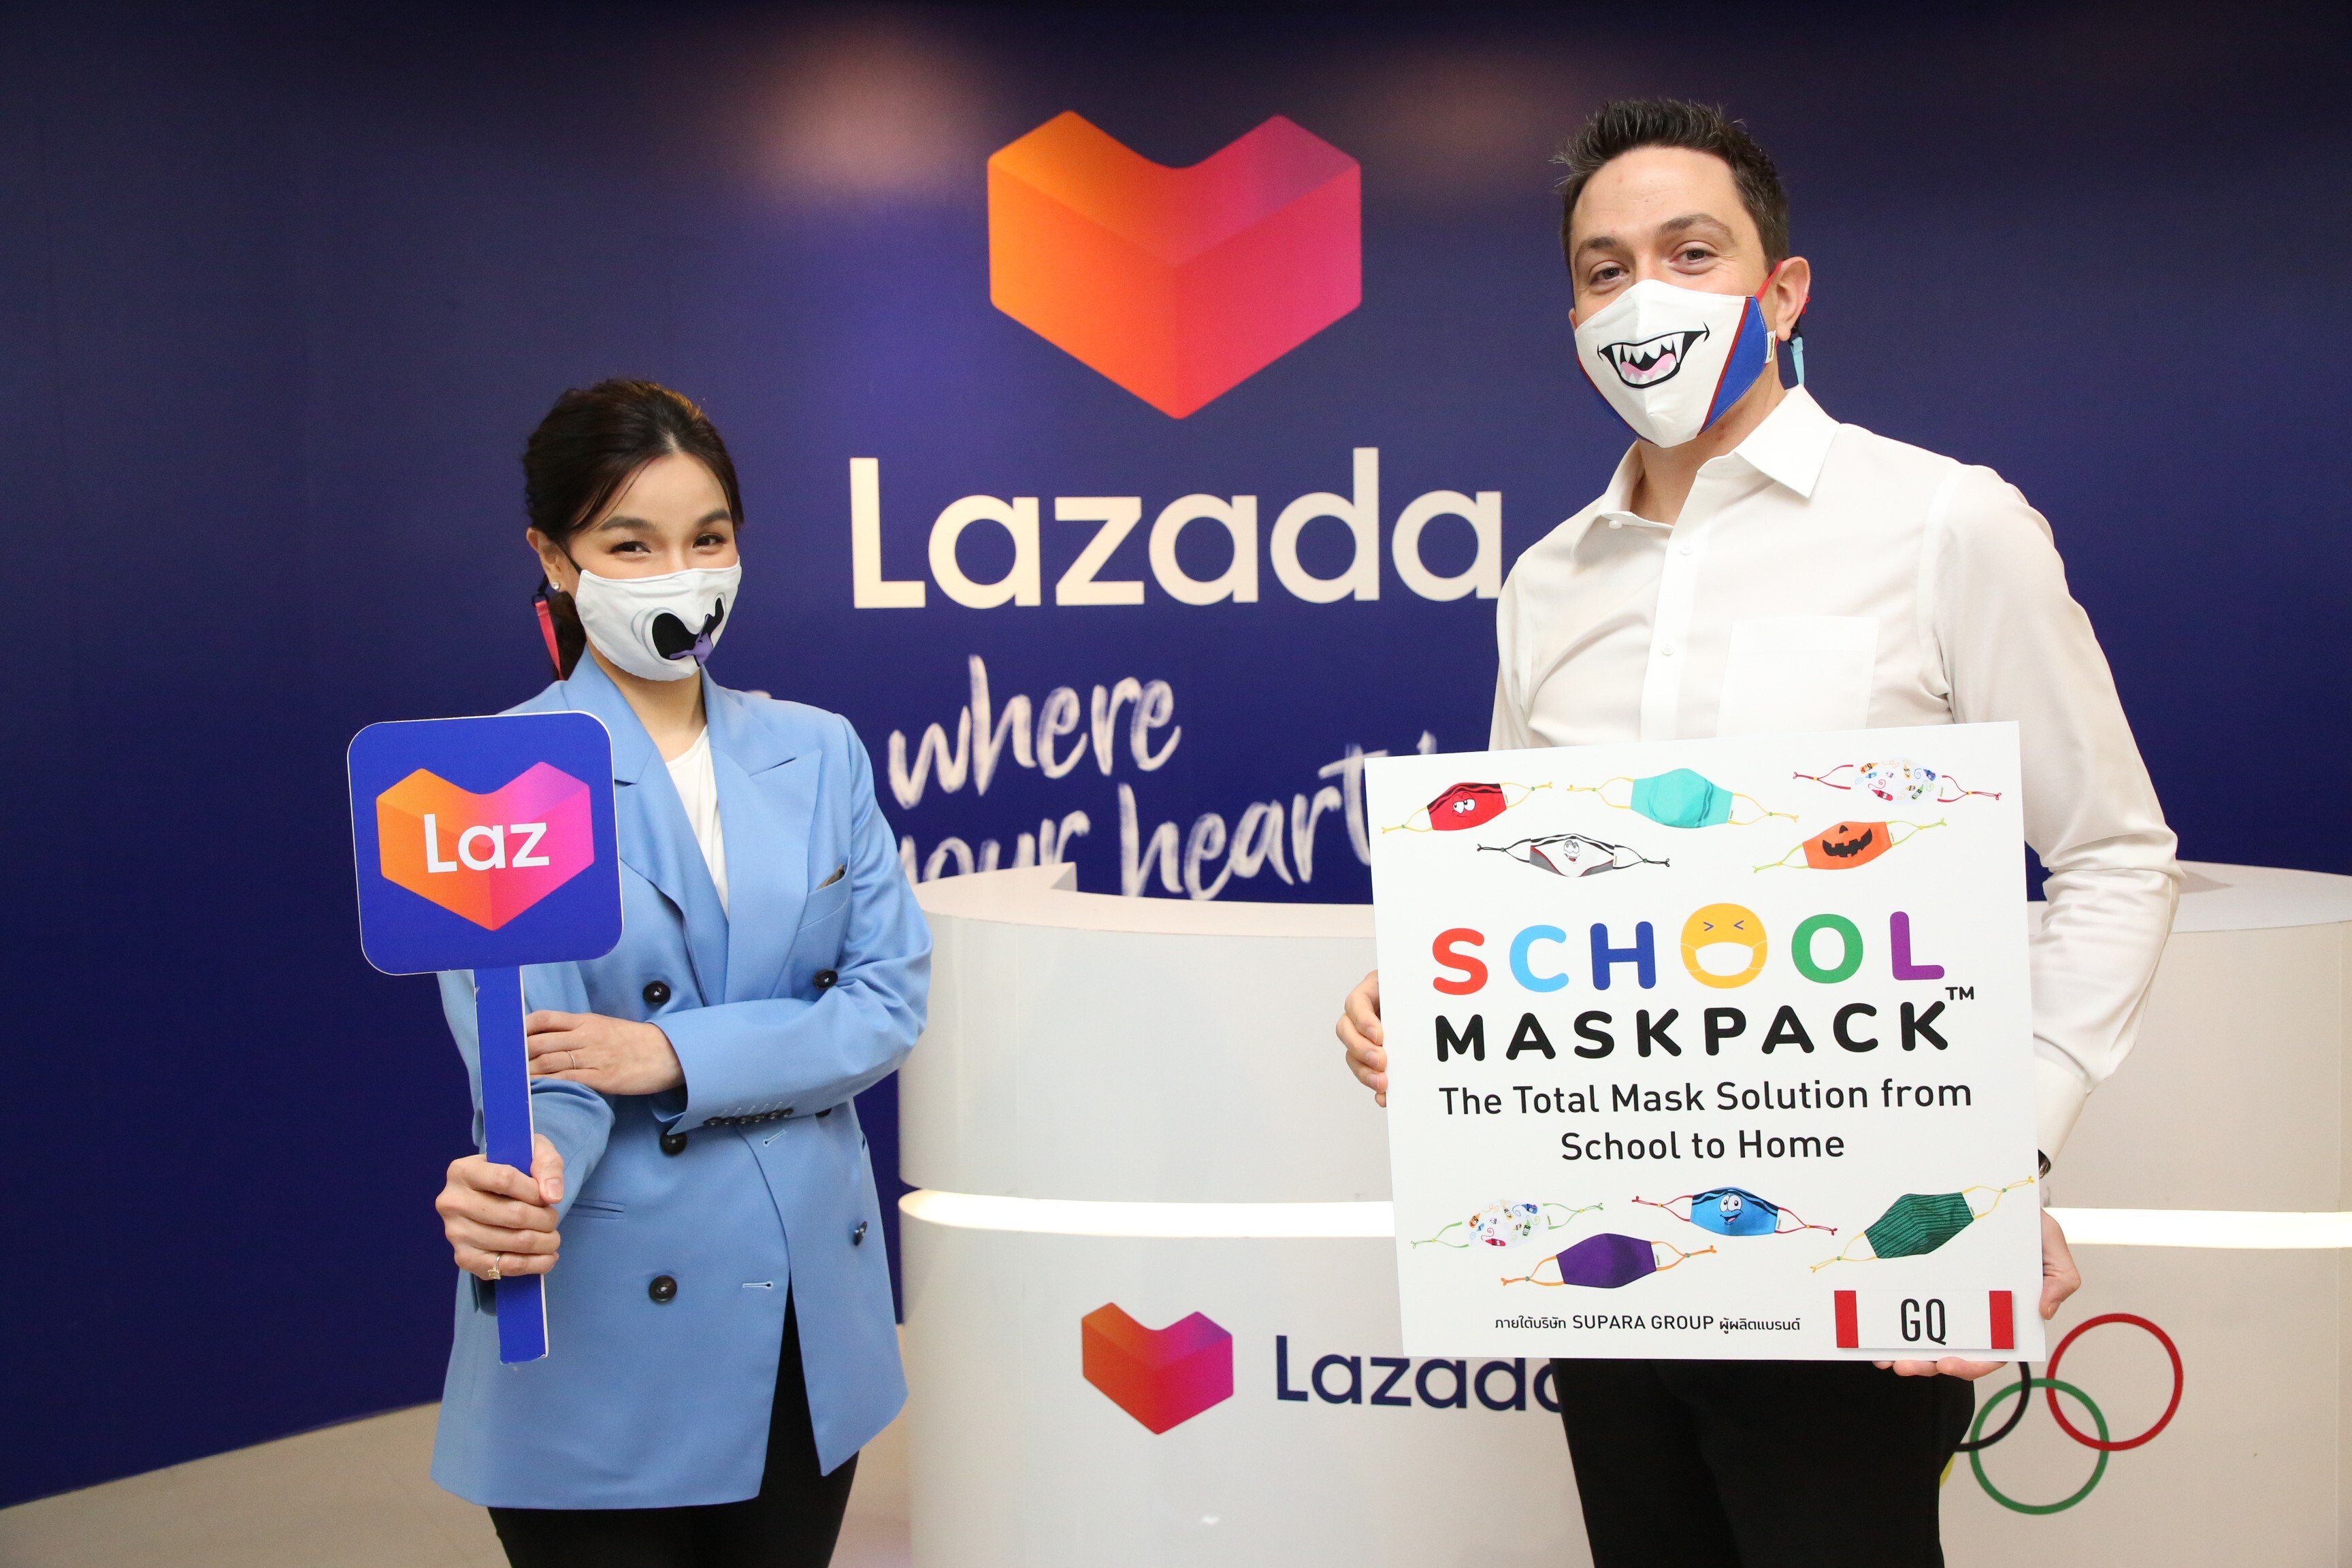 ลาซาด้าจับมือ GQ ขยายช่องทางออนไลน์จำหน่ายหน้ากากผ้าแบรนด์ใหม่สุดฮิต SchoolMaskPack(TM) ขยายตลาดสินค้าแม่และเด็กทั่วประเทศ